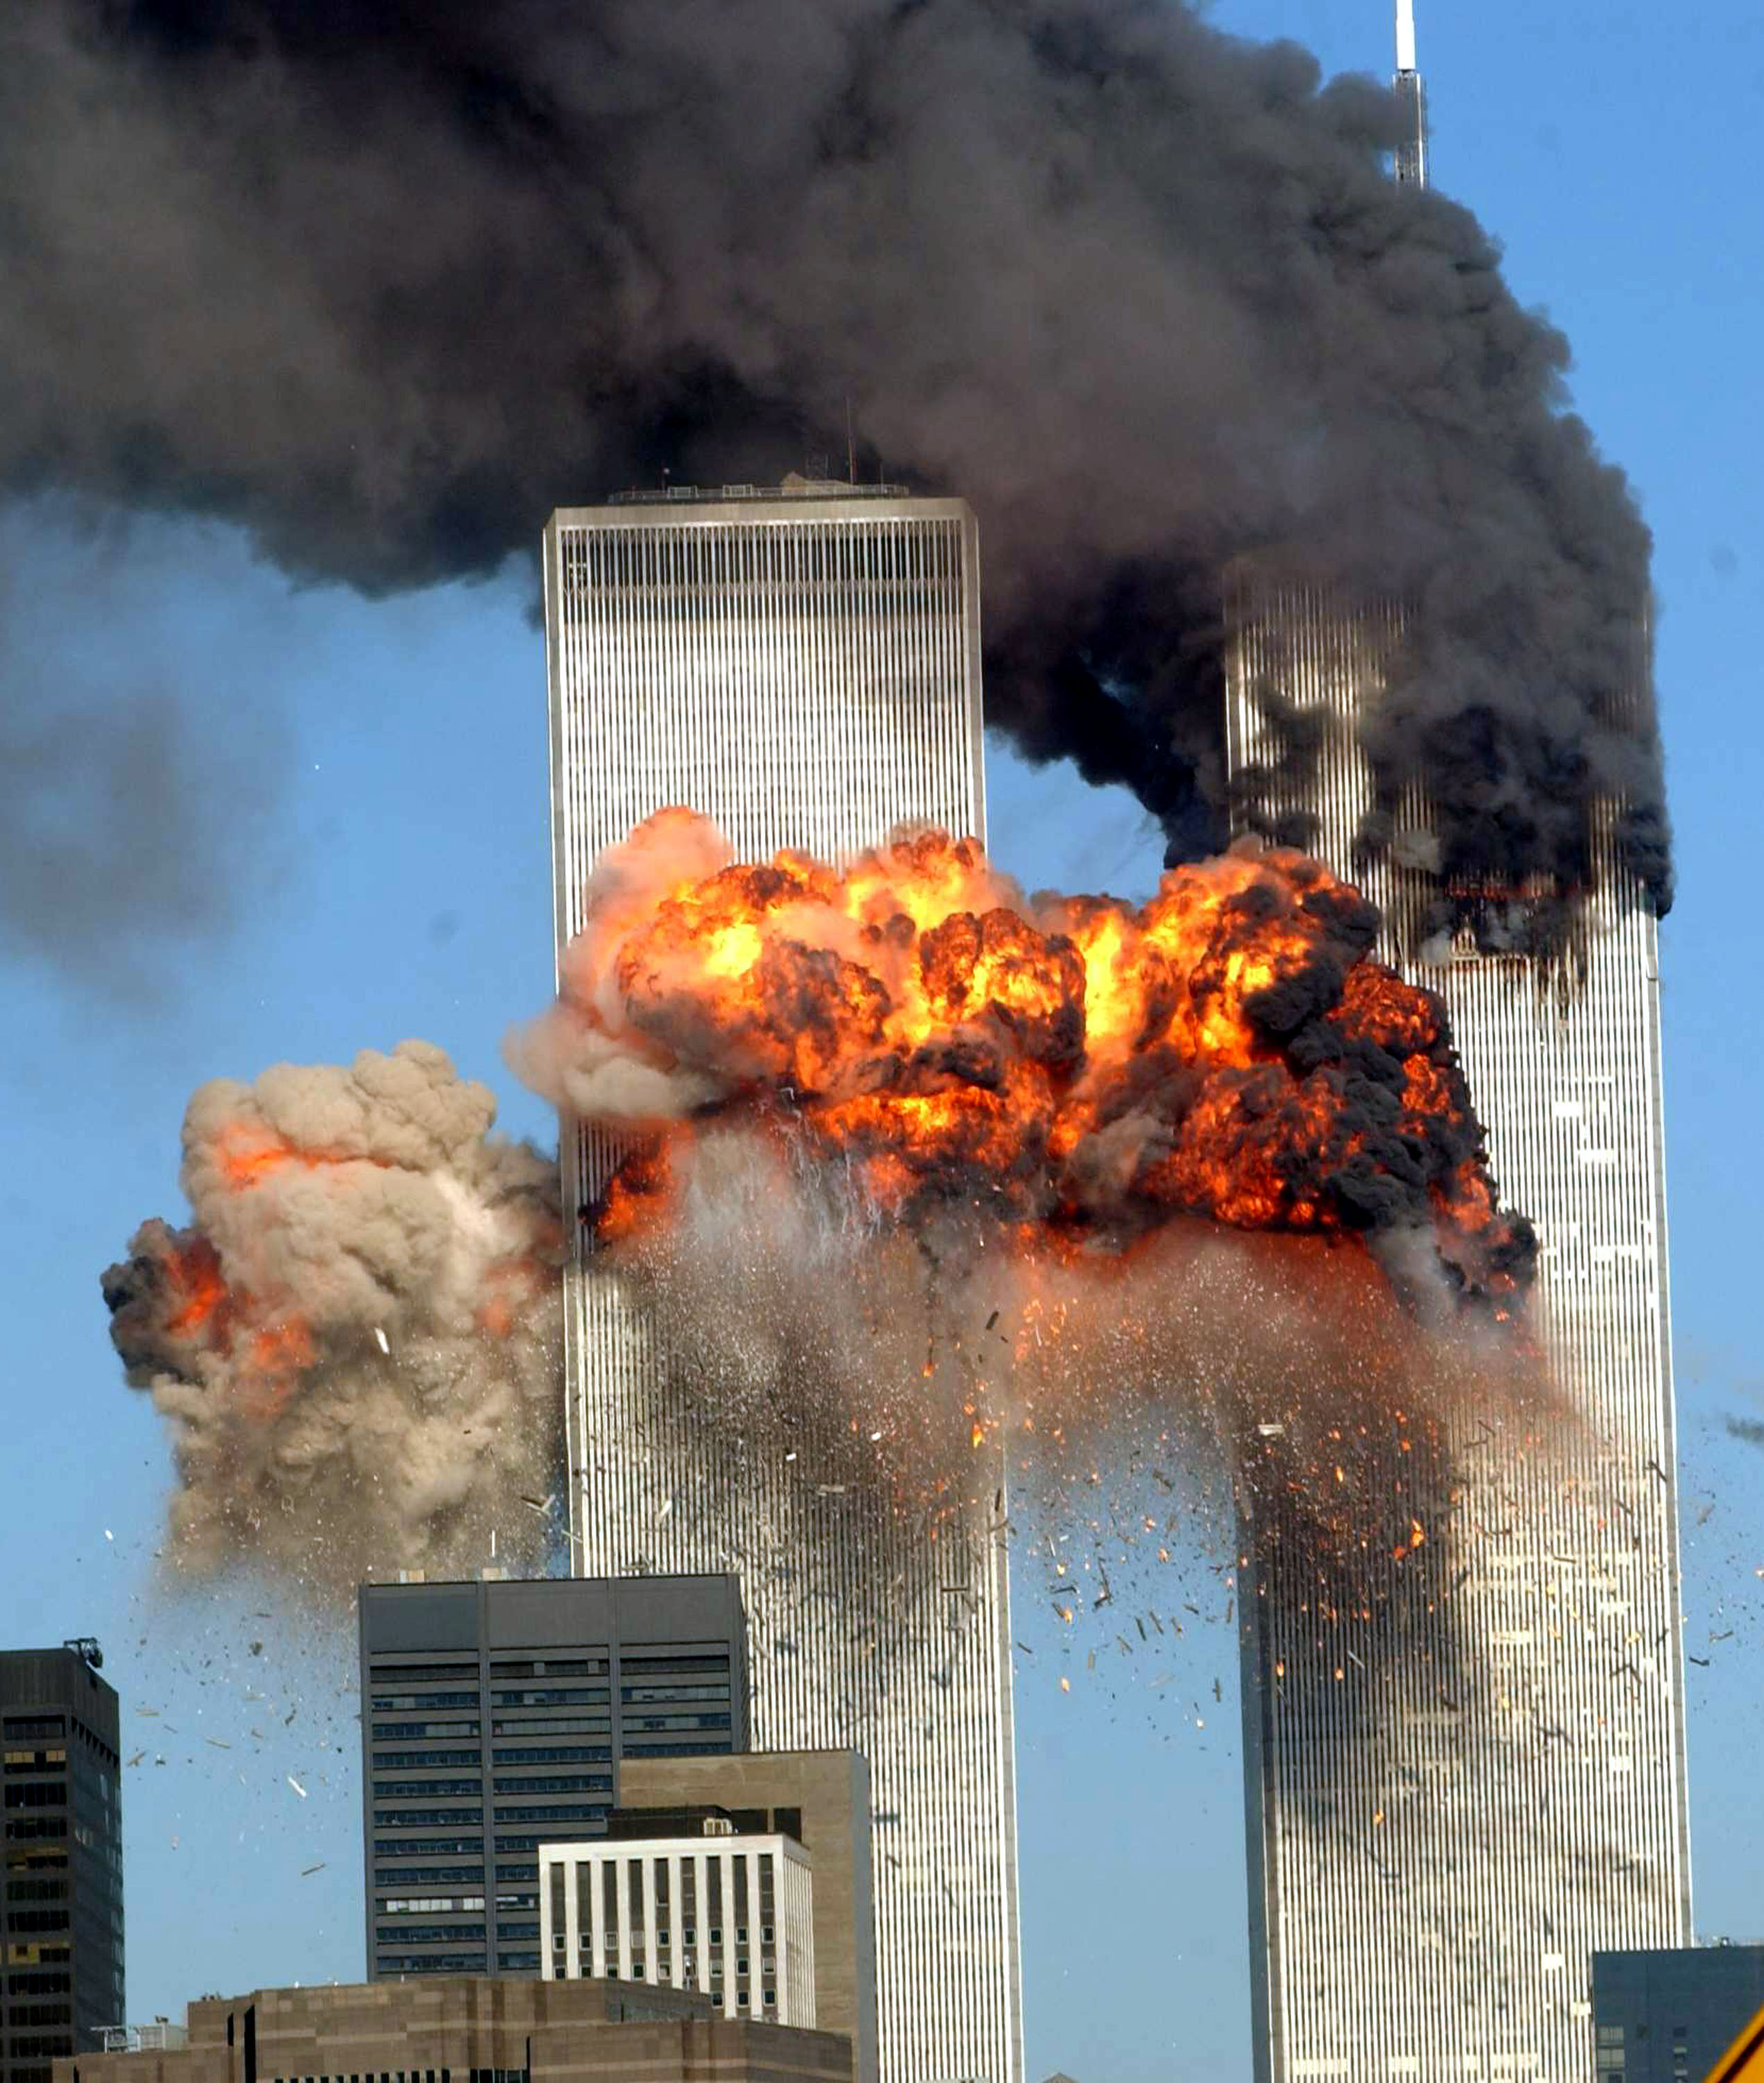 9·11二十年,被反恐改变的美国,伊拉克和阿富汗